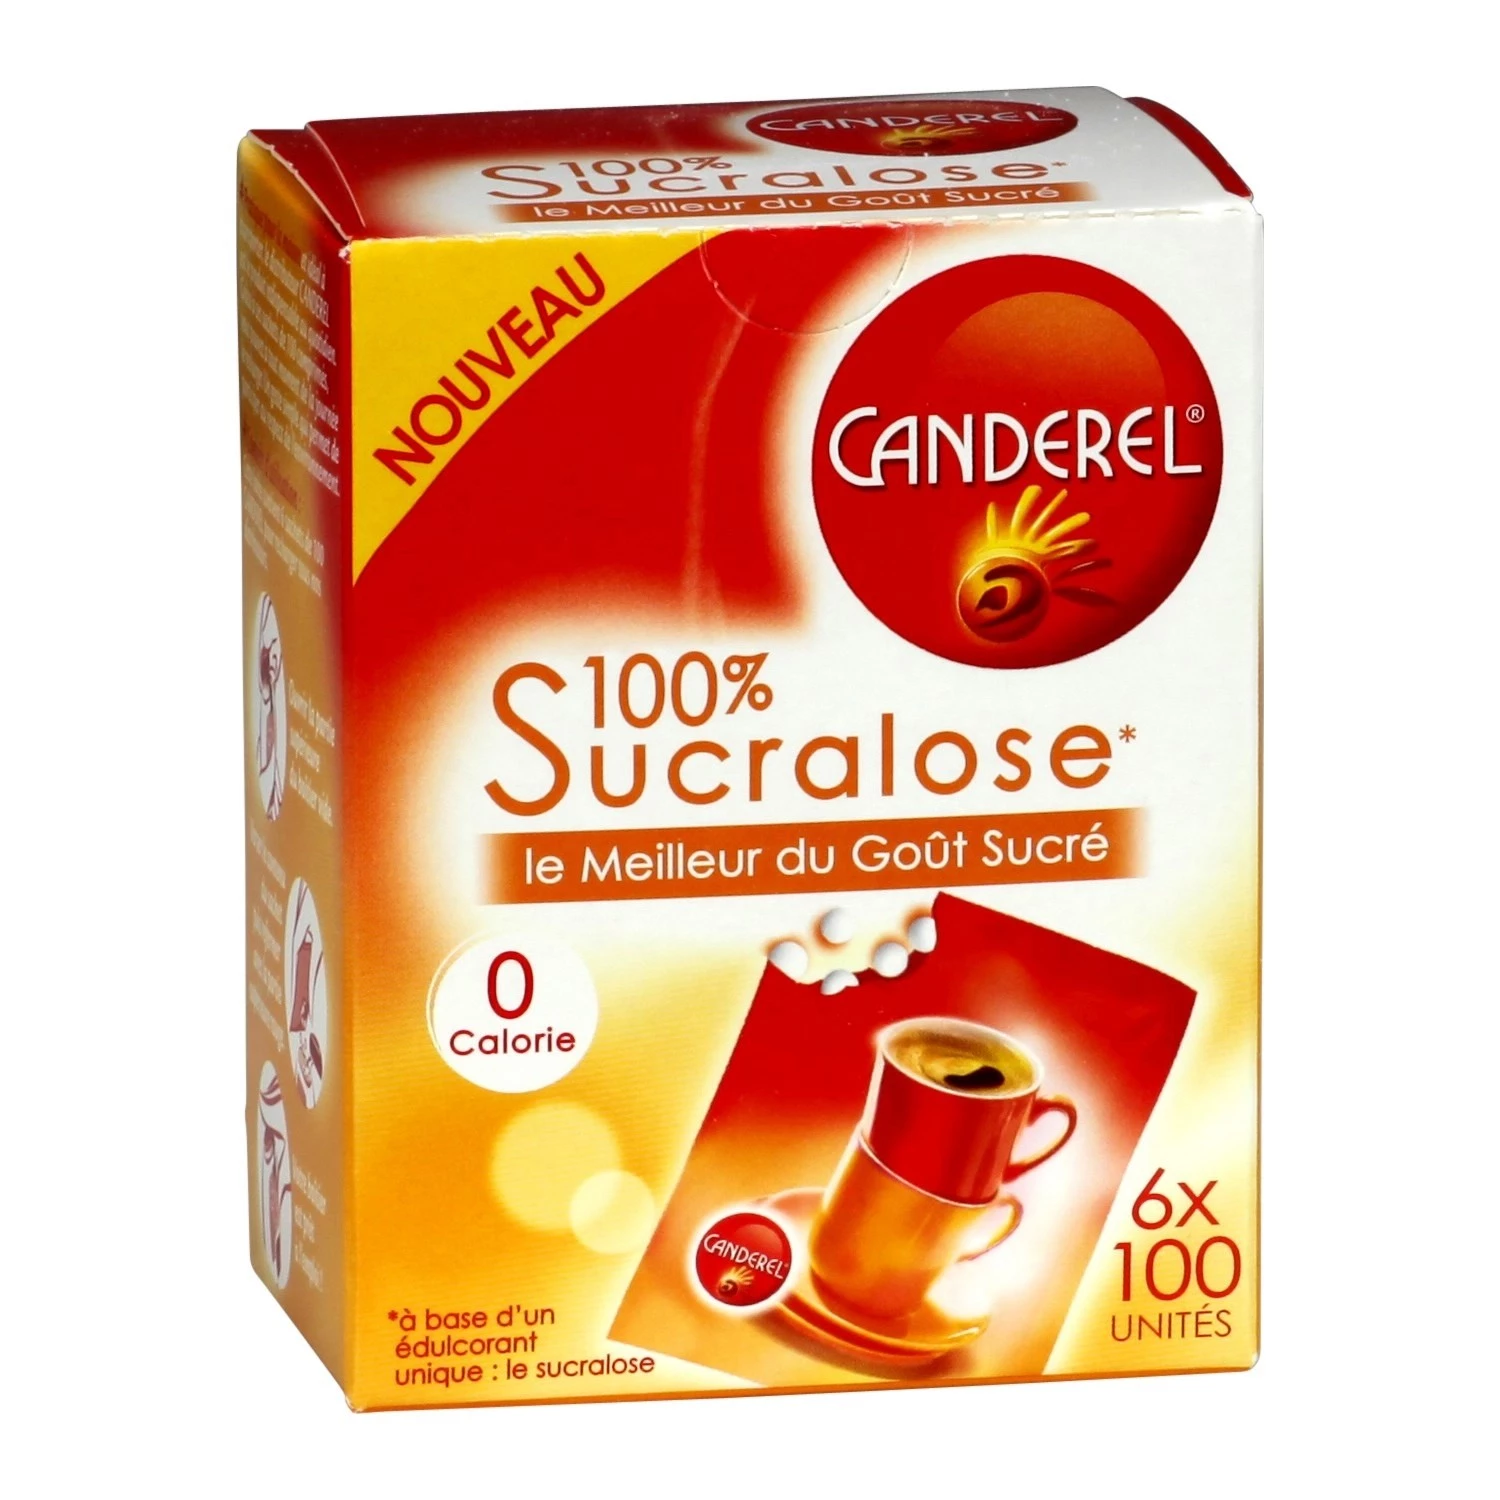 Chất làm ngọt bổ sung sucralose 6x100 viên - CANDEREL